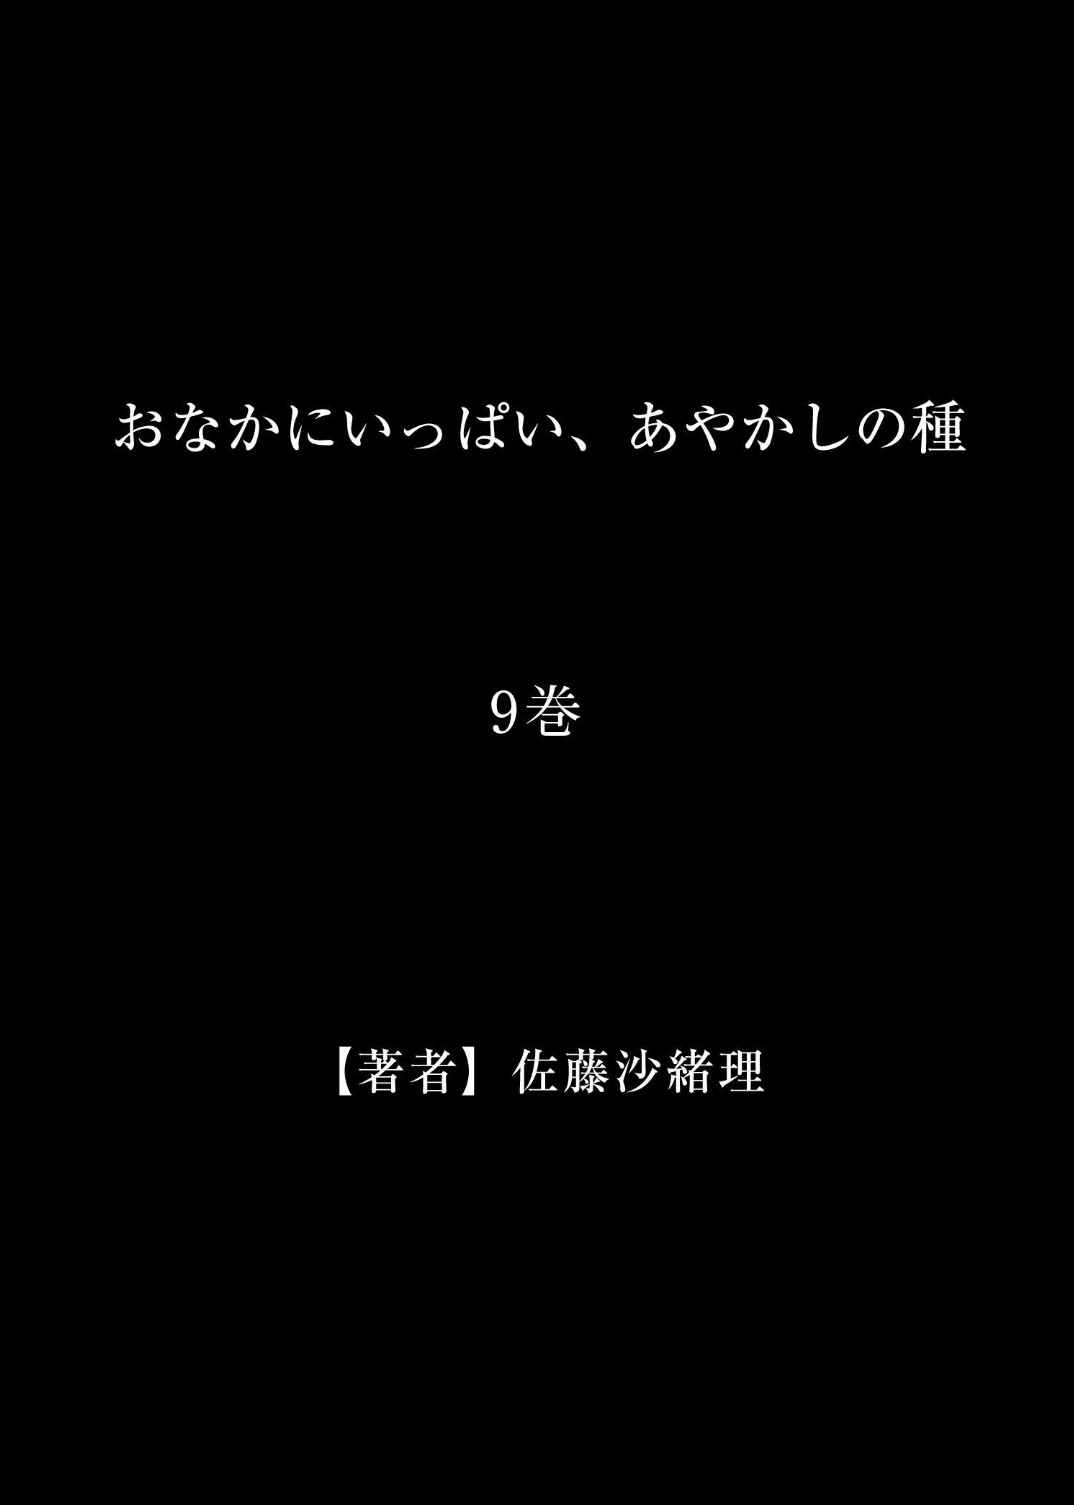 [Satou Saori] Onaka ni Ippai, Ayakashi no Tane 9 [佐藤沙緒理] おなかにいっぱい、あやかしの種 9